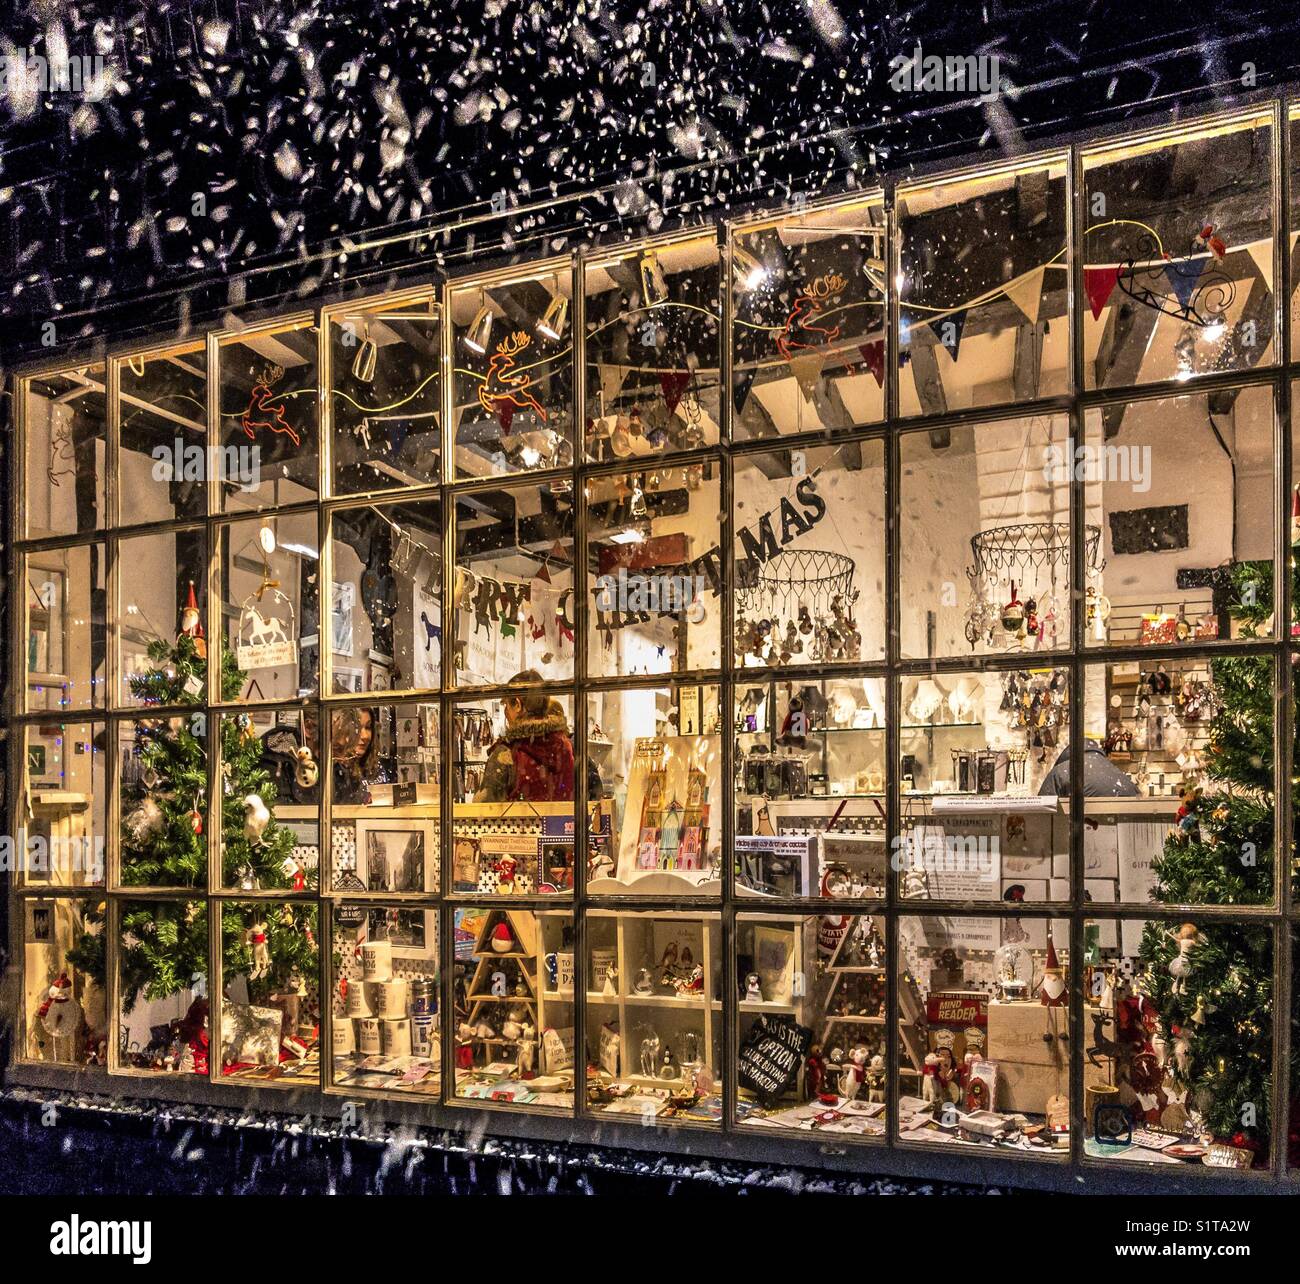 Fenêtre d'une boutique de cadeaux à Noël avec la neige qui tombe à l'extérieur Banque D'Images